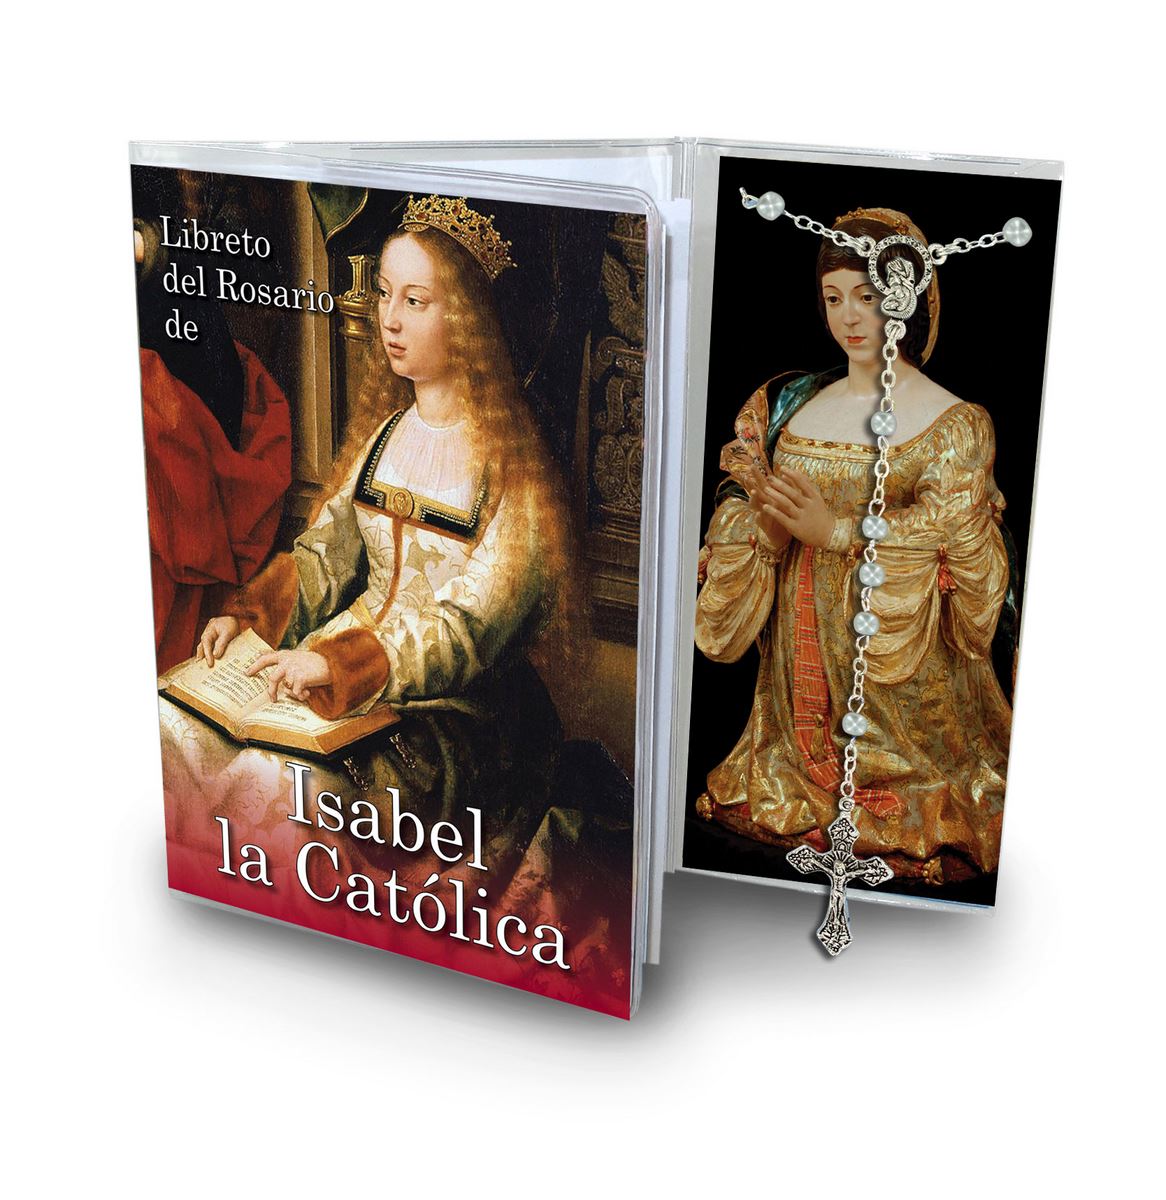 libretto con rosario isabel la catolica - spagnolo